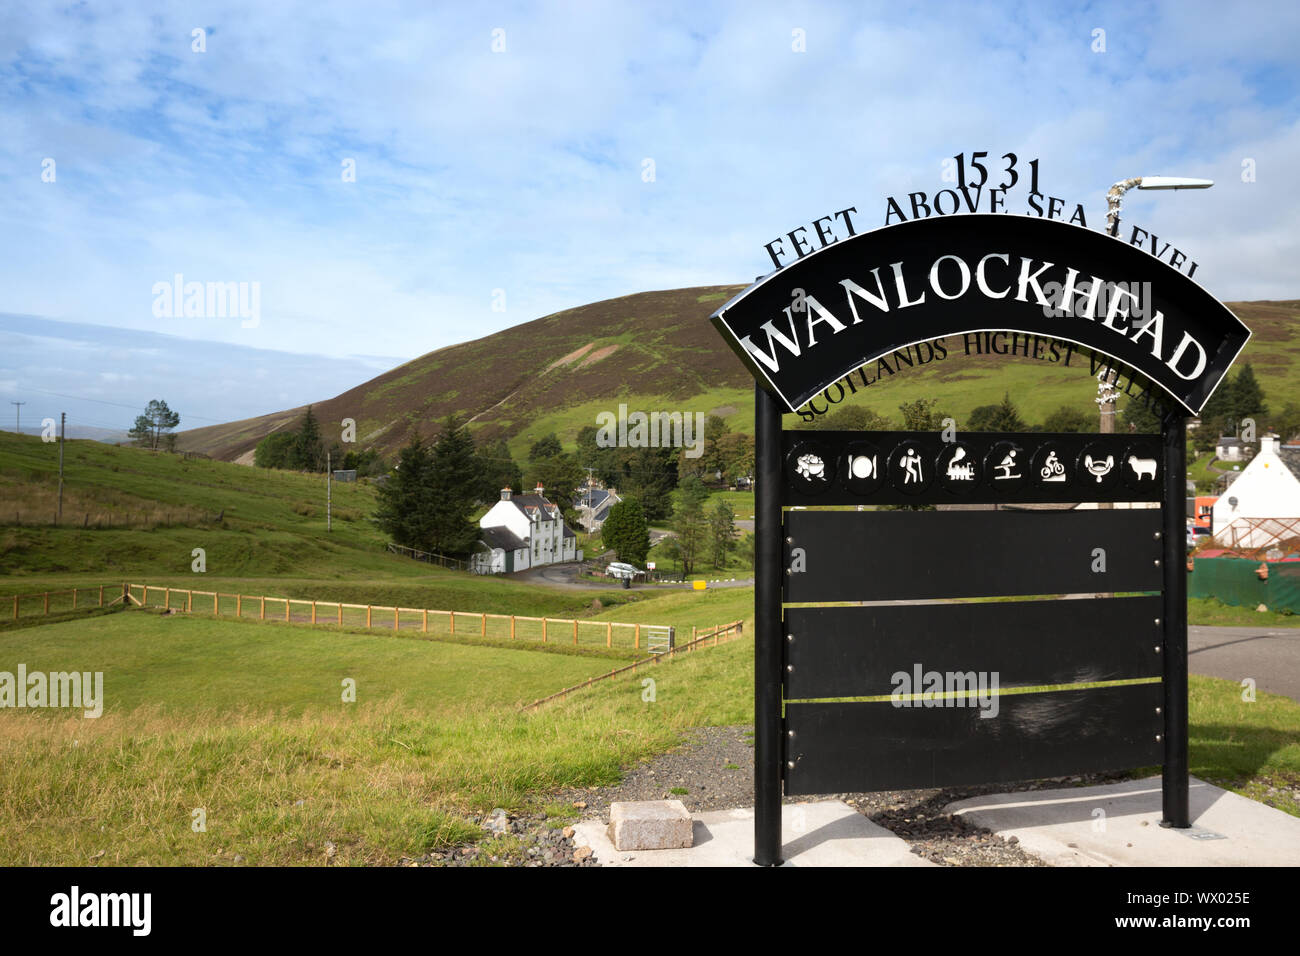 Wanlockhead das höchste Dorf in Schottland und im Vereinigten Königreich bei 1531 Fuß über Meeresspiegel Stockfoto